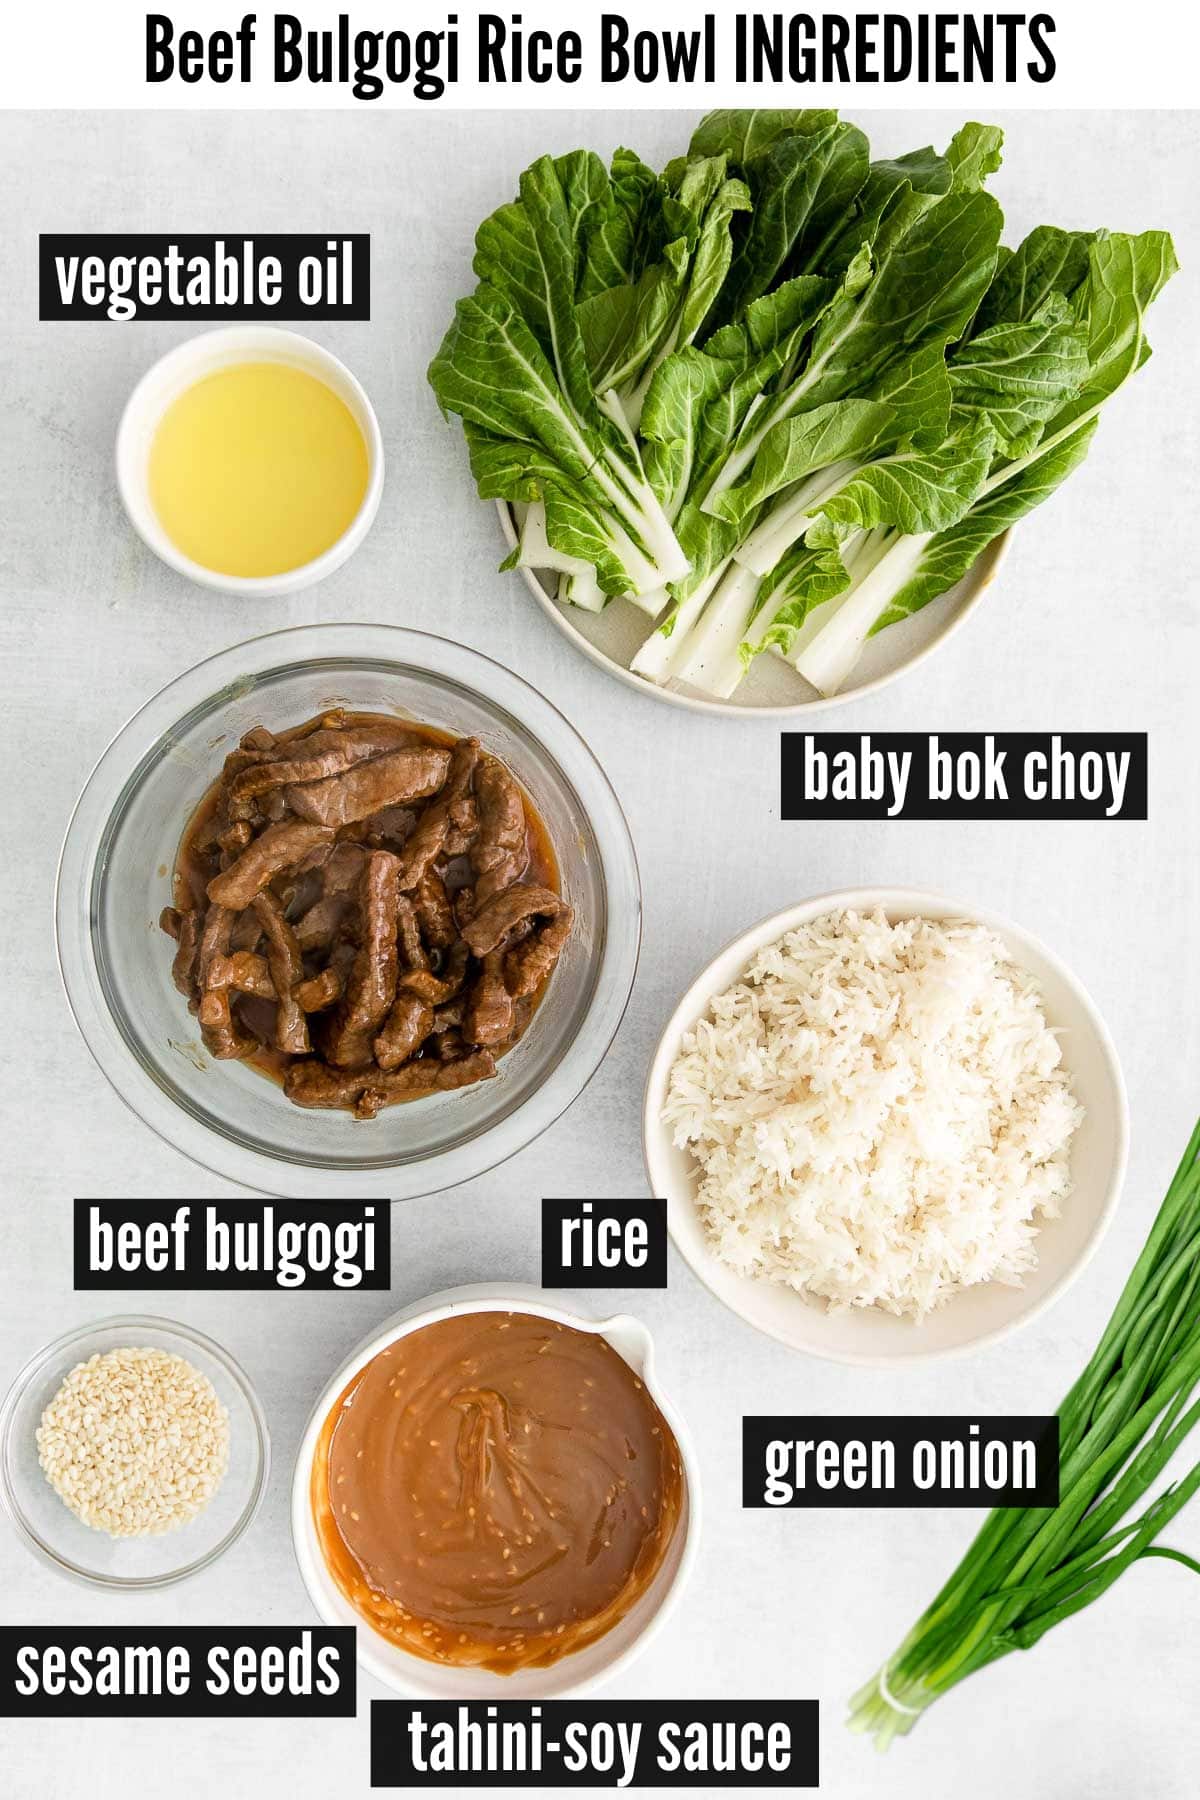 beef bulgogi bowl labelled ingredients.